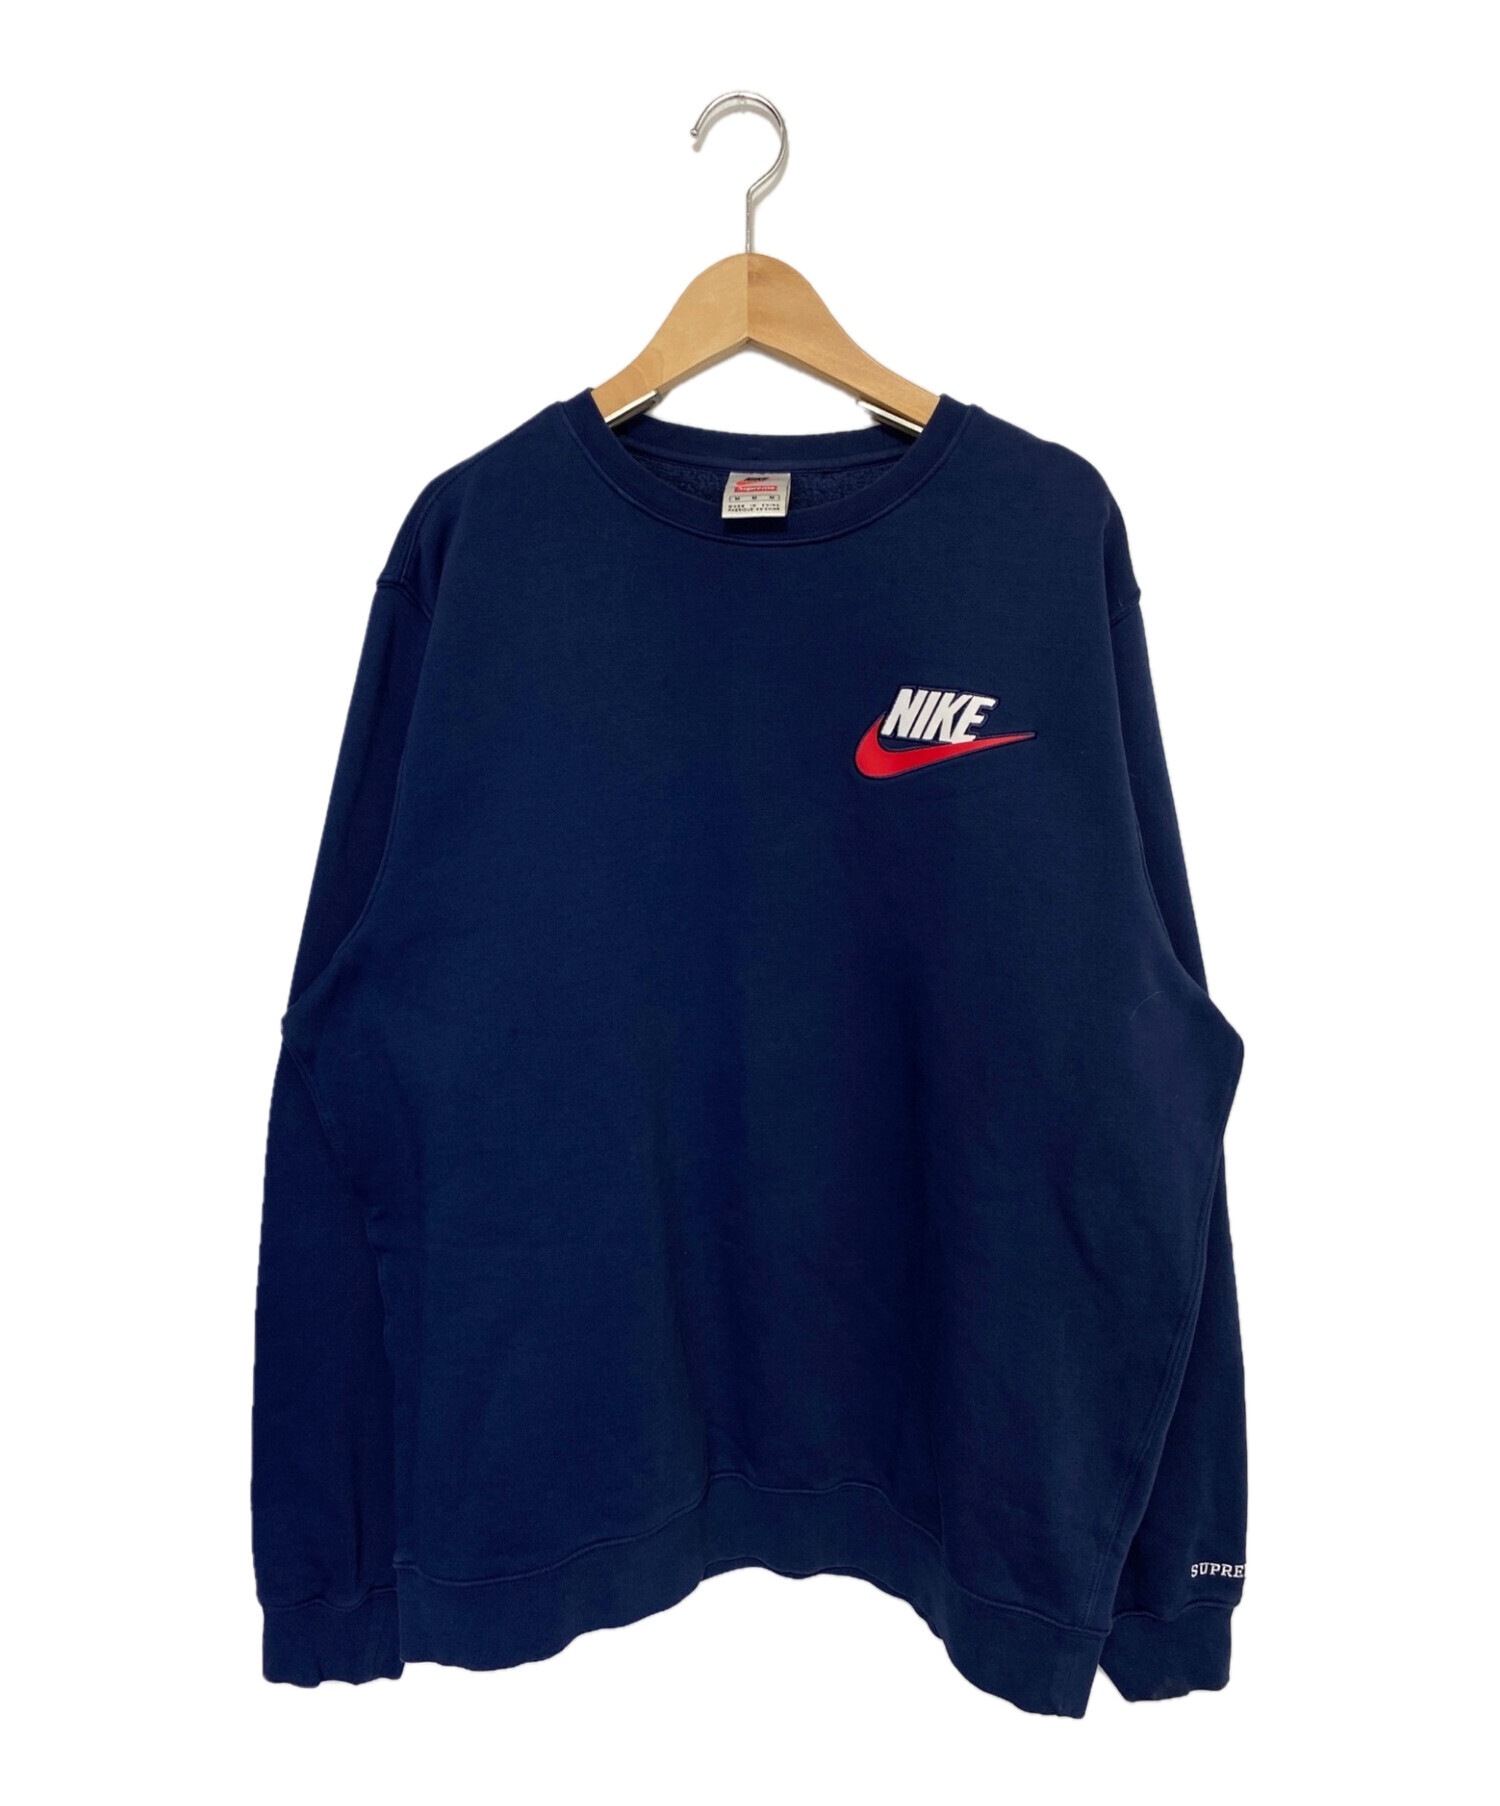 Supreme/Nike Crewneck Sweatshirt NAVY